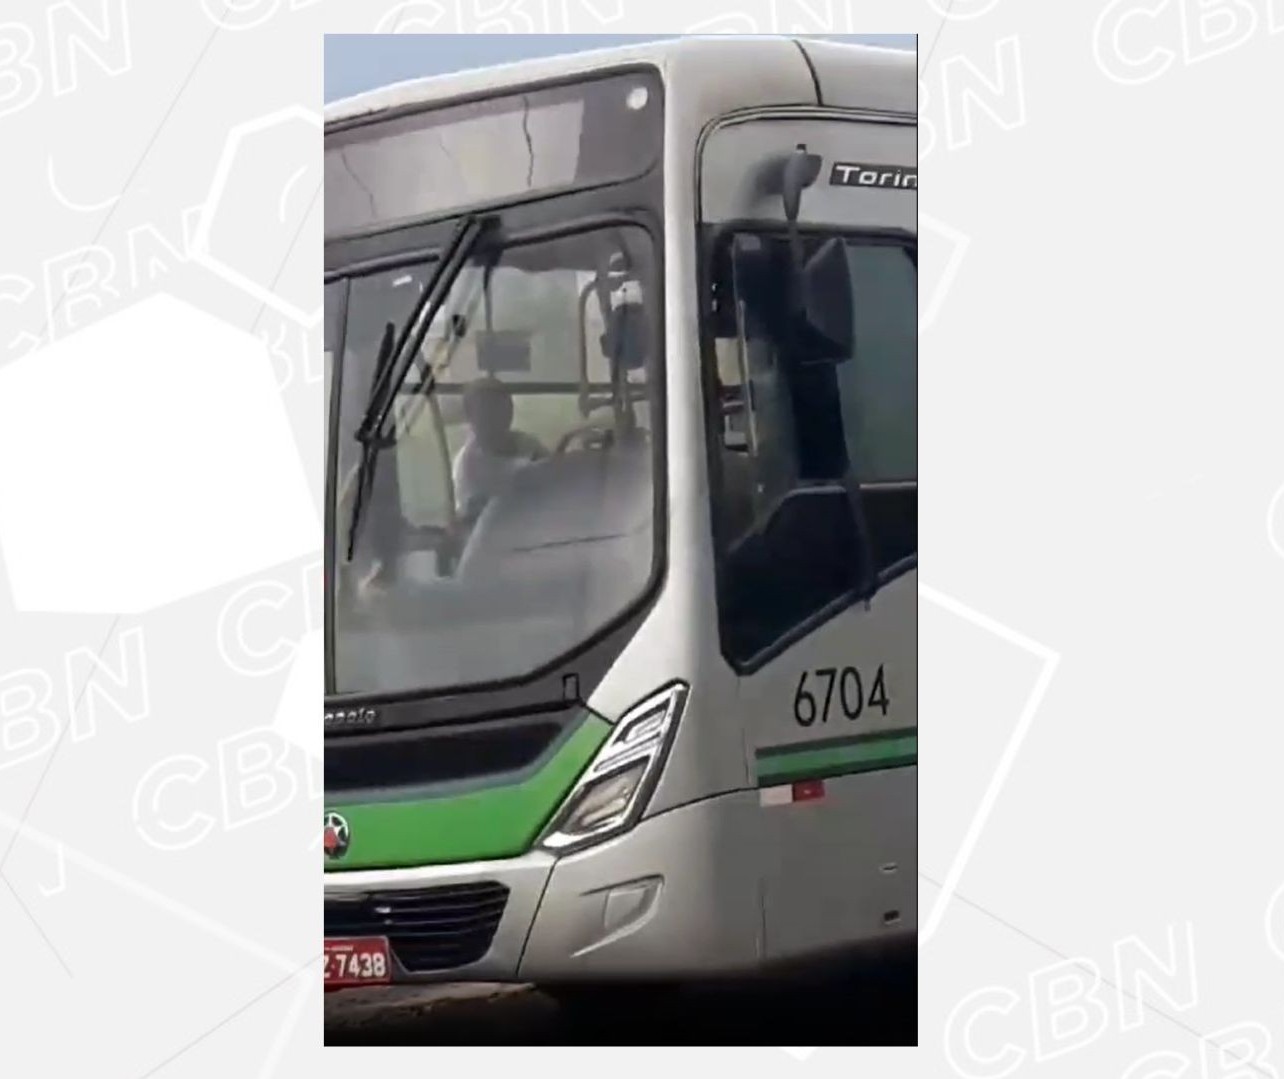 Empresa fala sobre motorista que deixou ônibus após bagunça de alunos